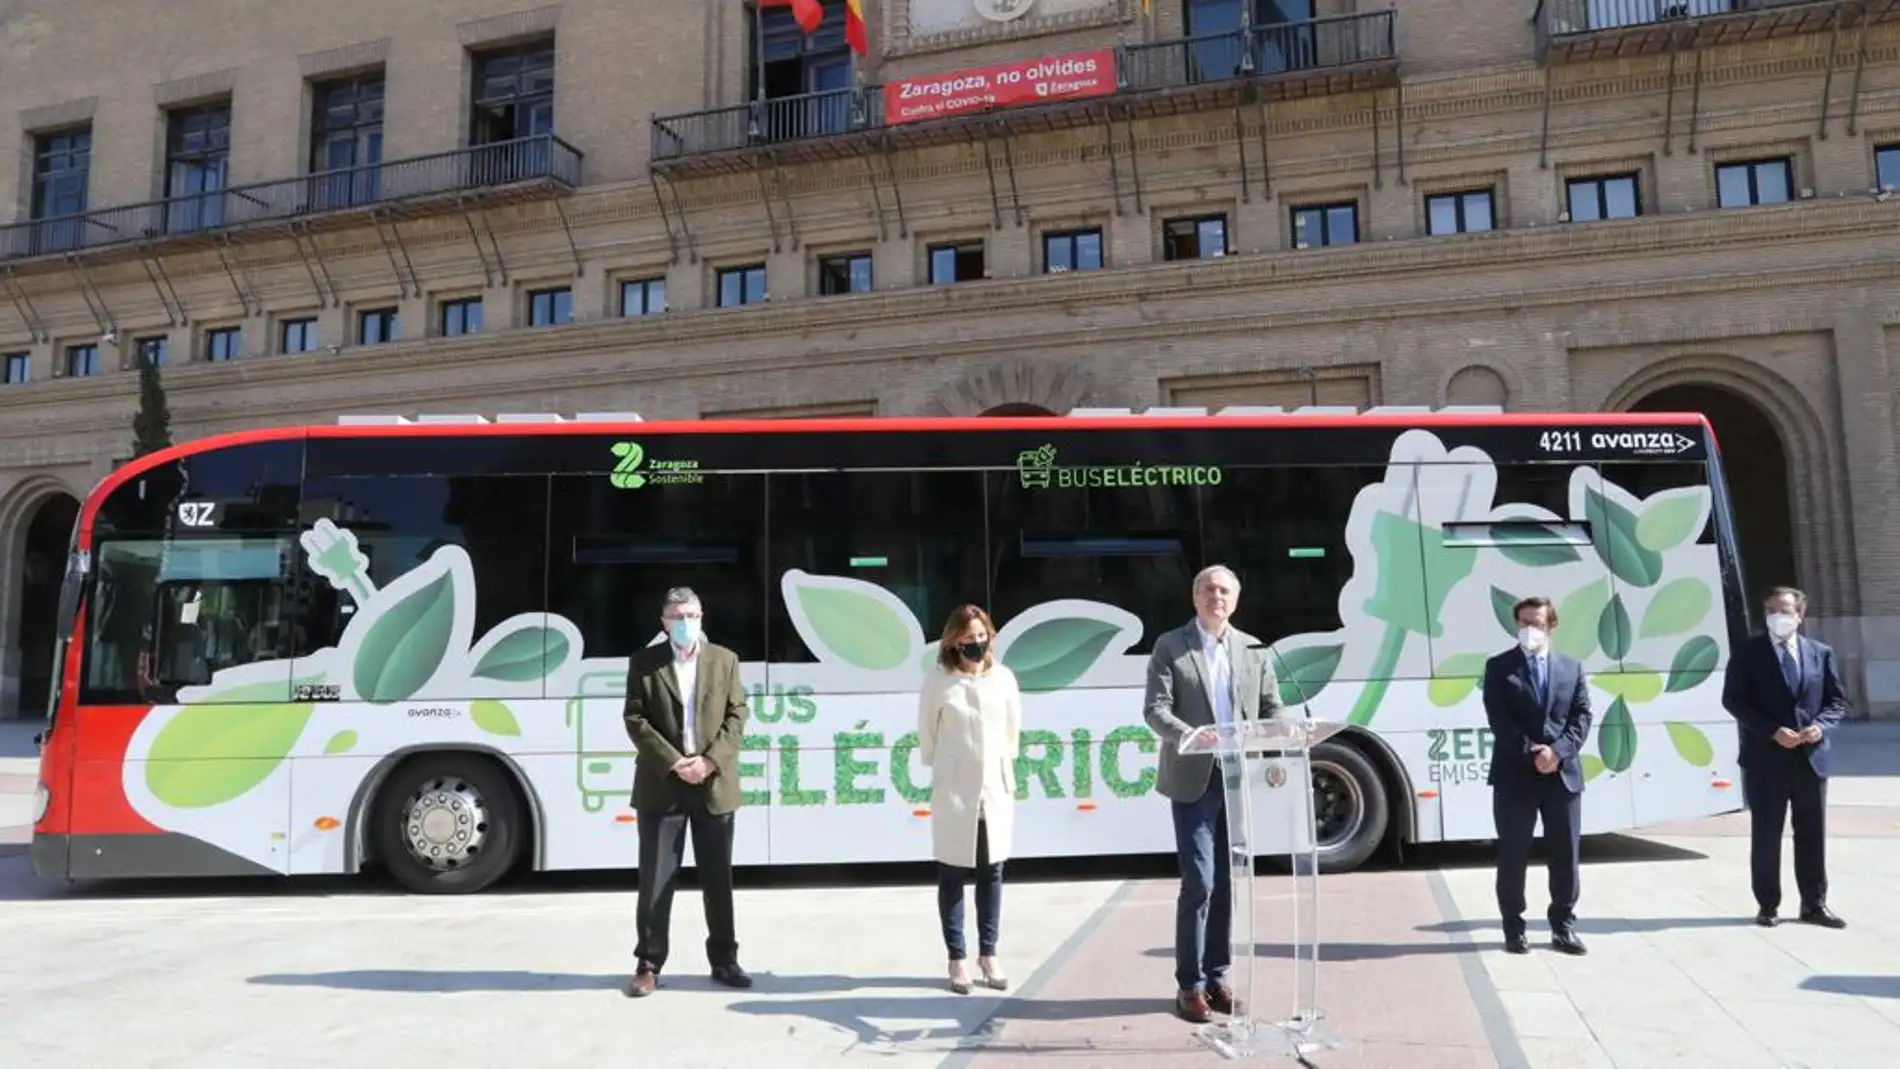 El alcalde ha anunciado que no habrá nuevos buses contaminantes